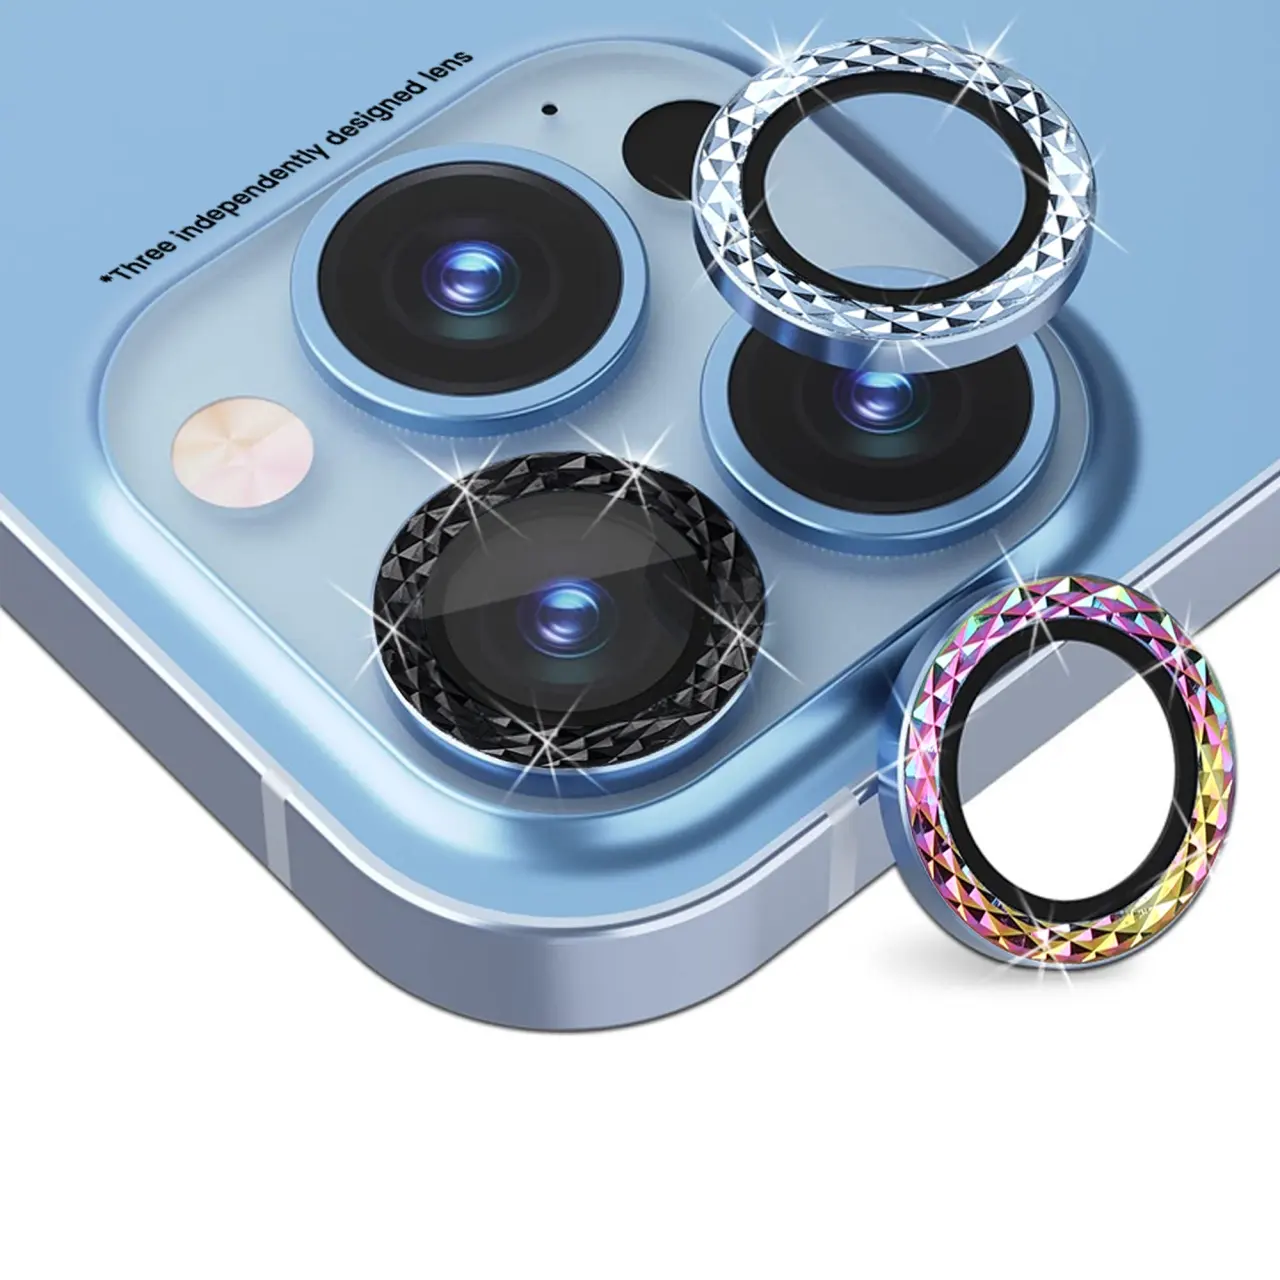 Somostel Camera lenses protectors mica de vidrio para camara protectores de lente para celular camera tempered glass for iPhone